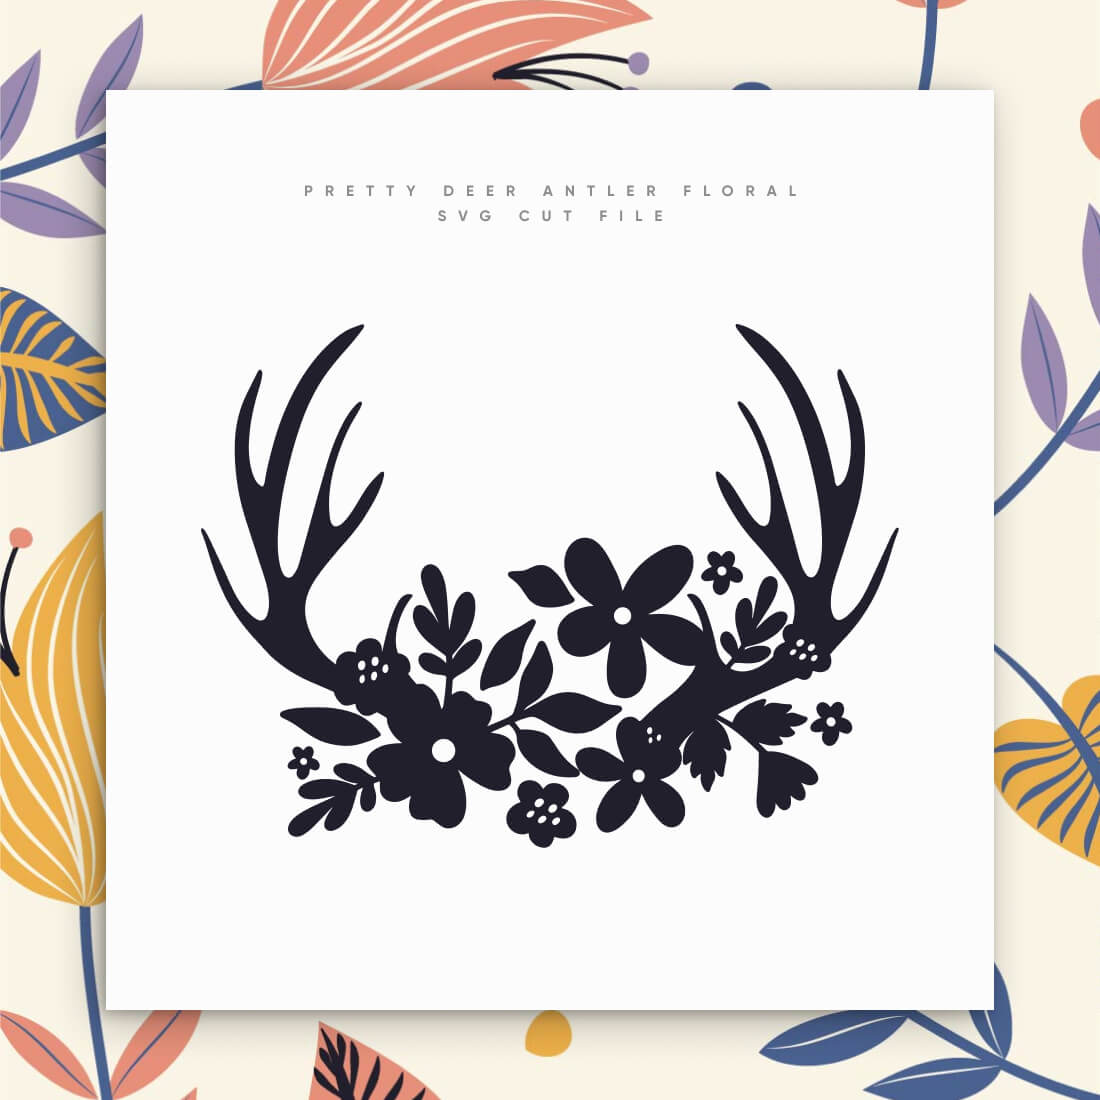 Pretty Deer Antler Floral SVG Cut File cover image.